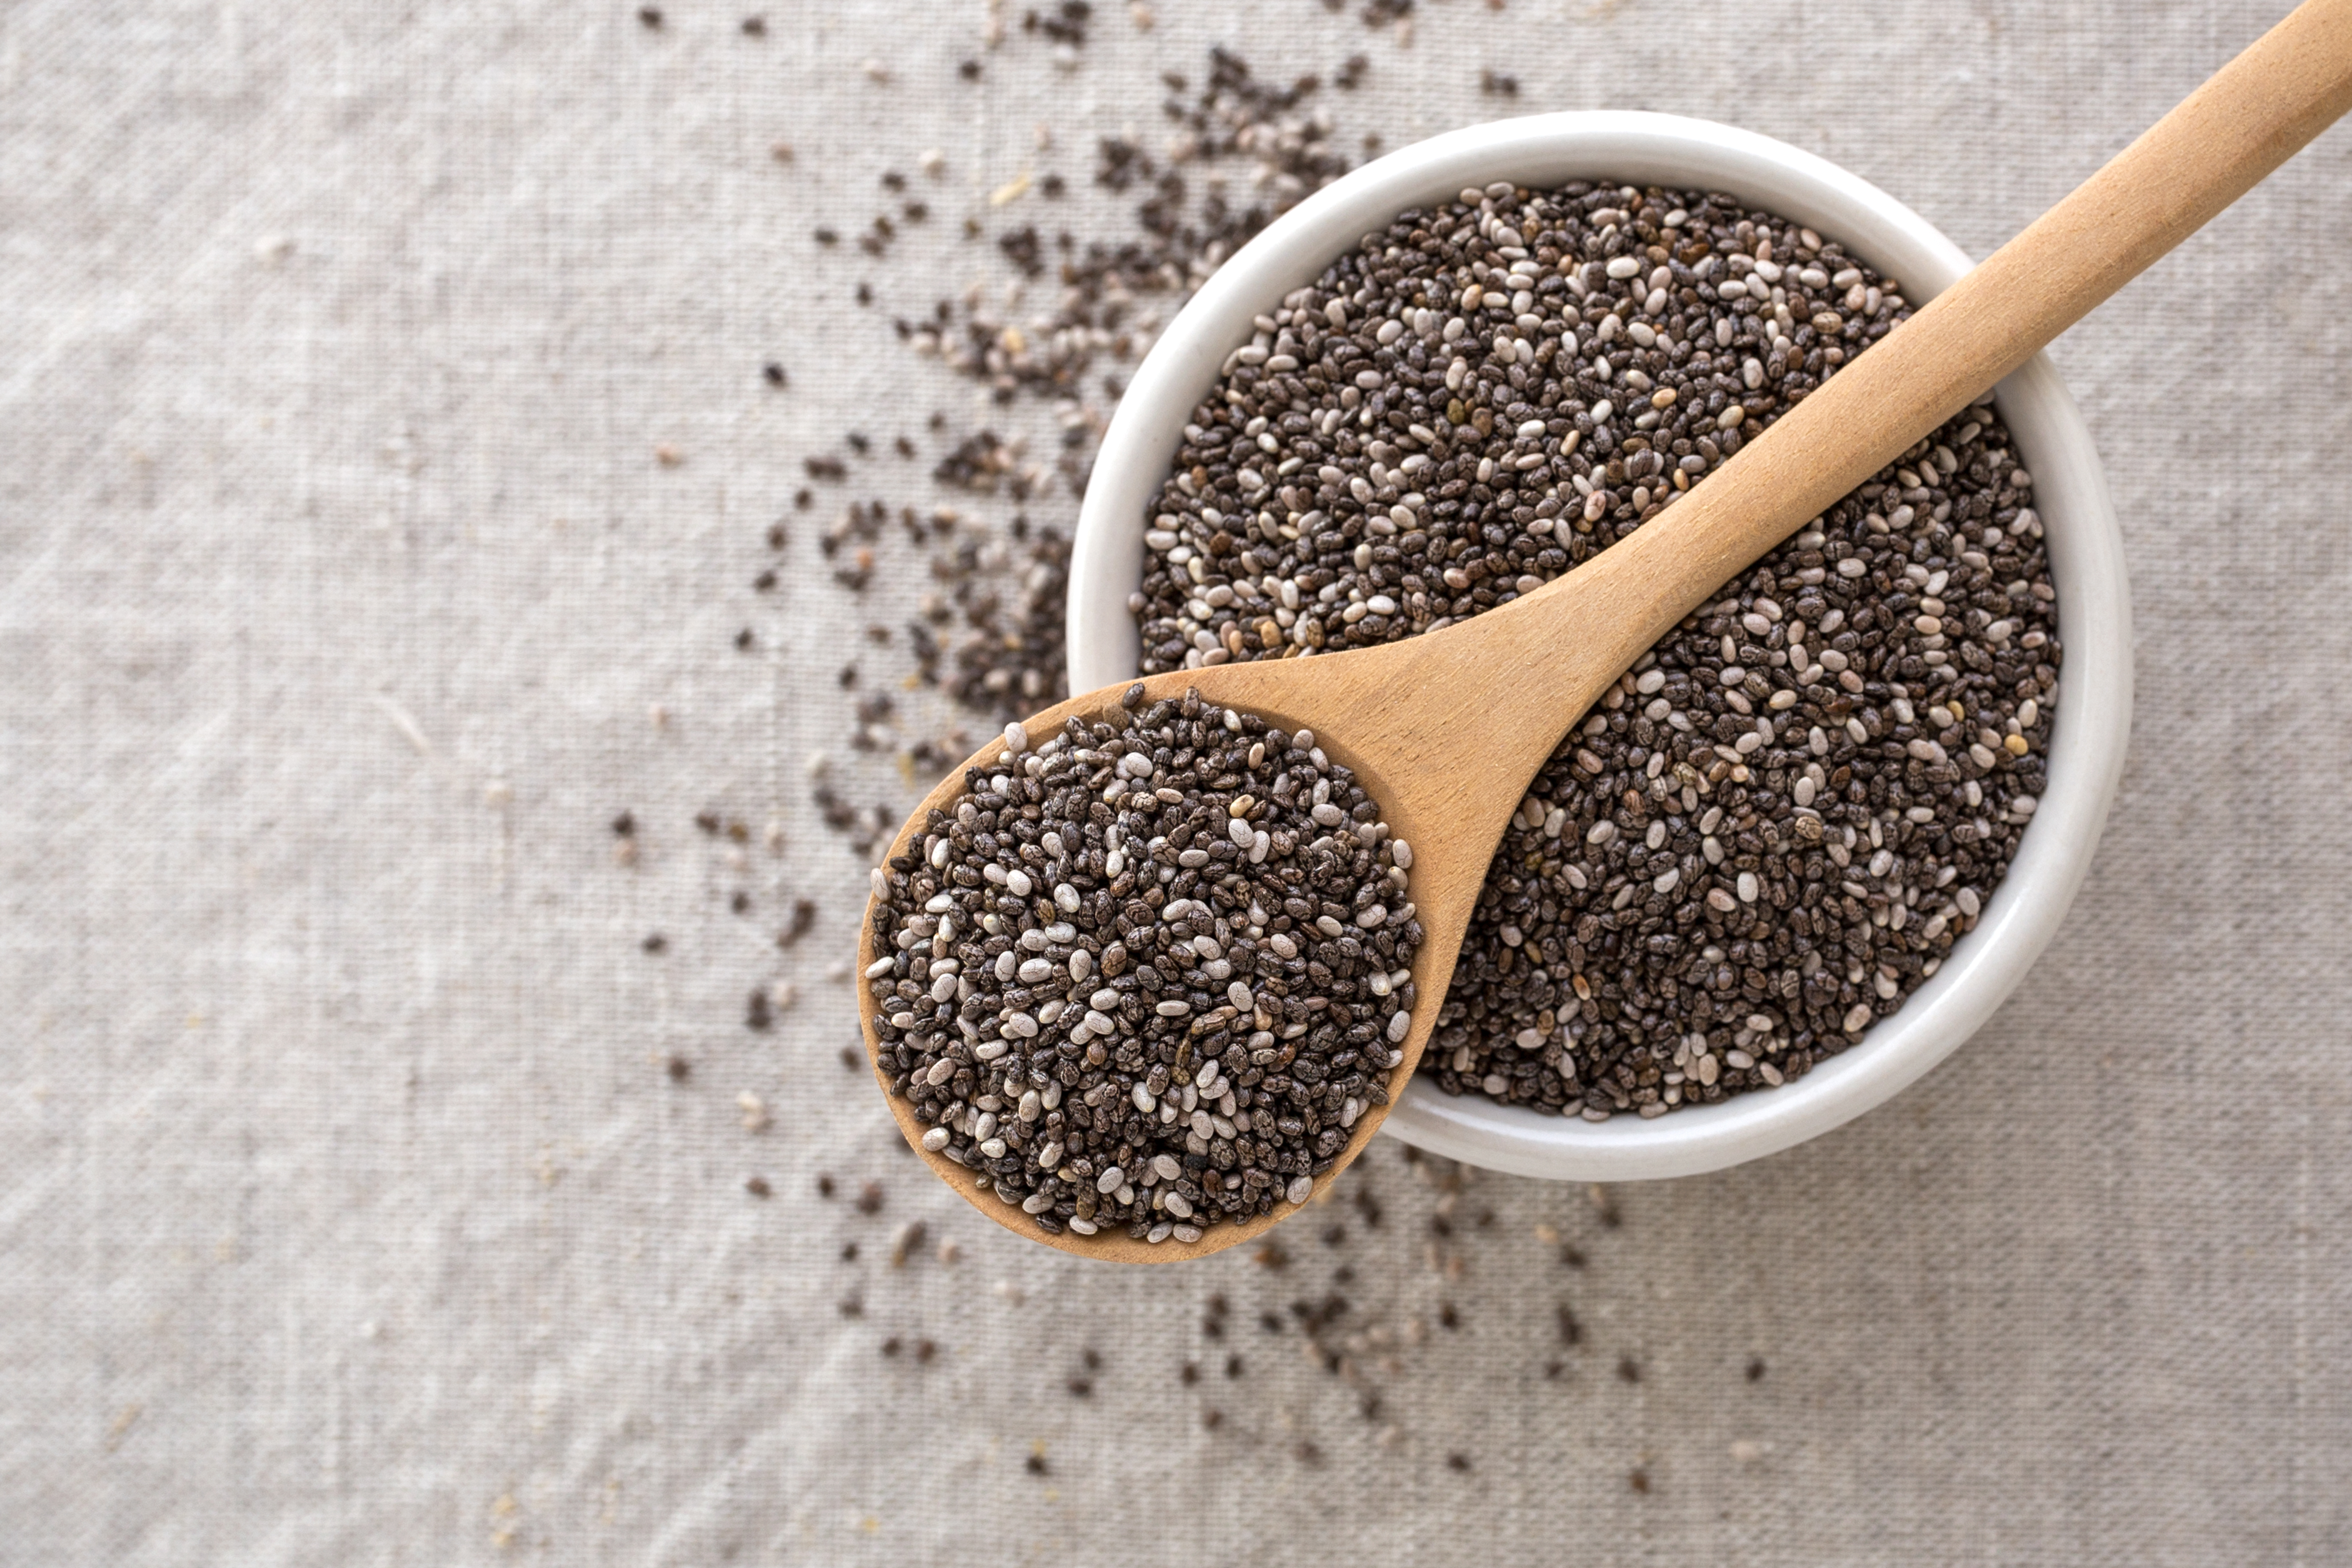 Las semillas de chía son una gran fuente de antioxidantes, por lo que ayudan a la pérdida de peso, a la salud digestiva y del corazón. (Foto Prensa Libre: Shutterstock)